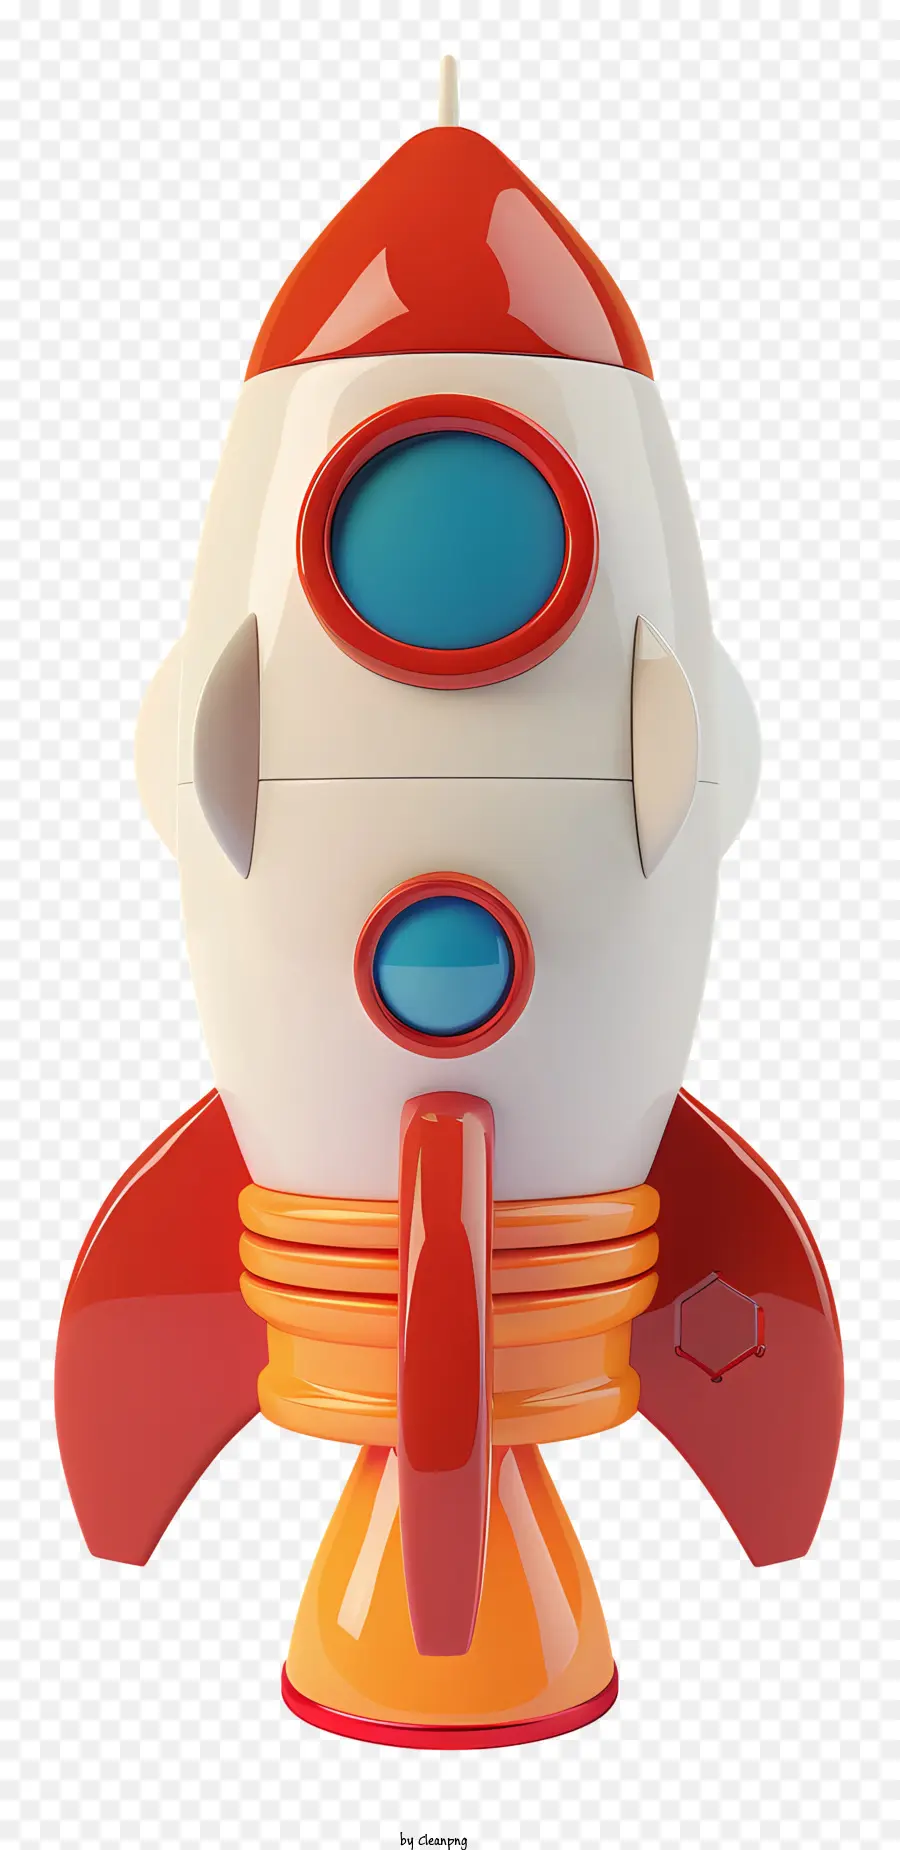 L'astronauta - Nave a razzo colorata con cupola di vetro